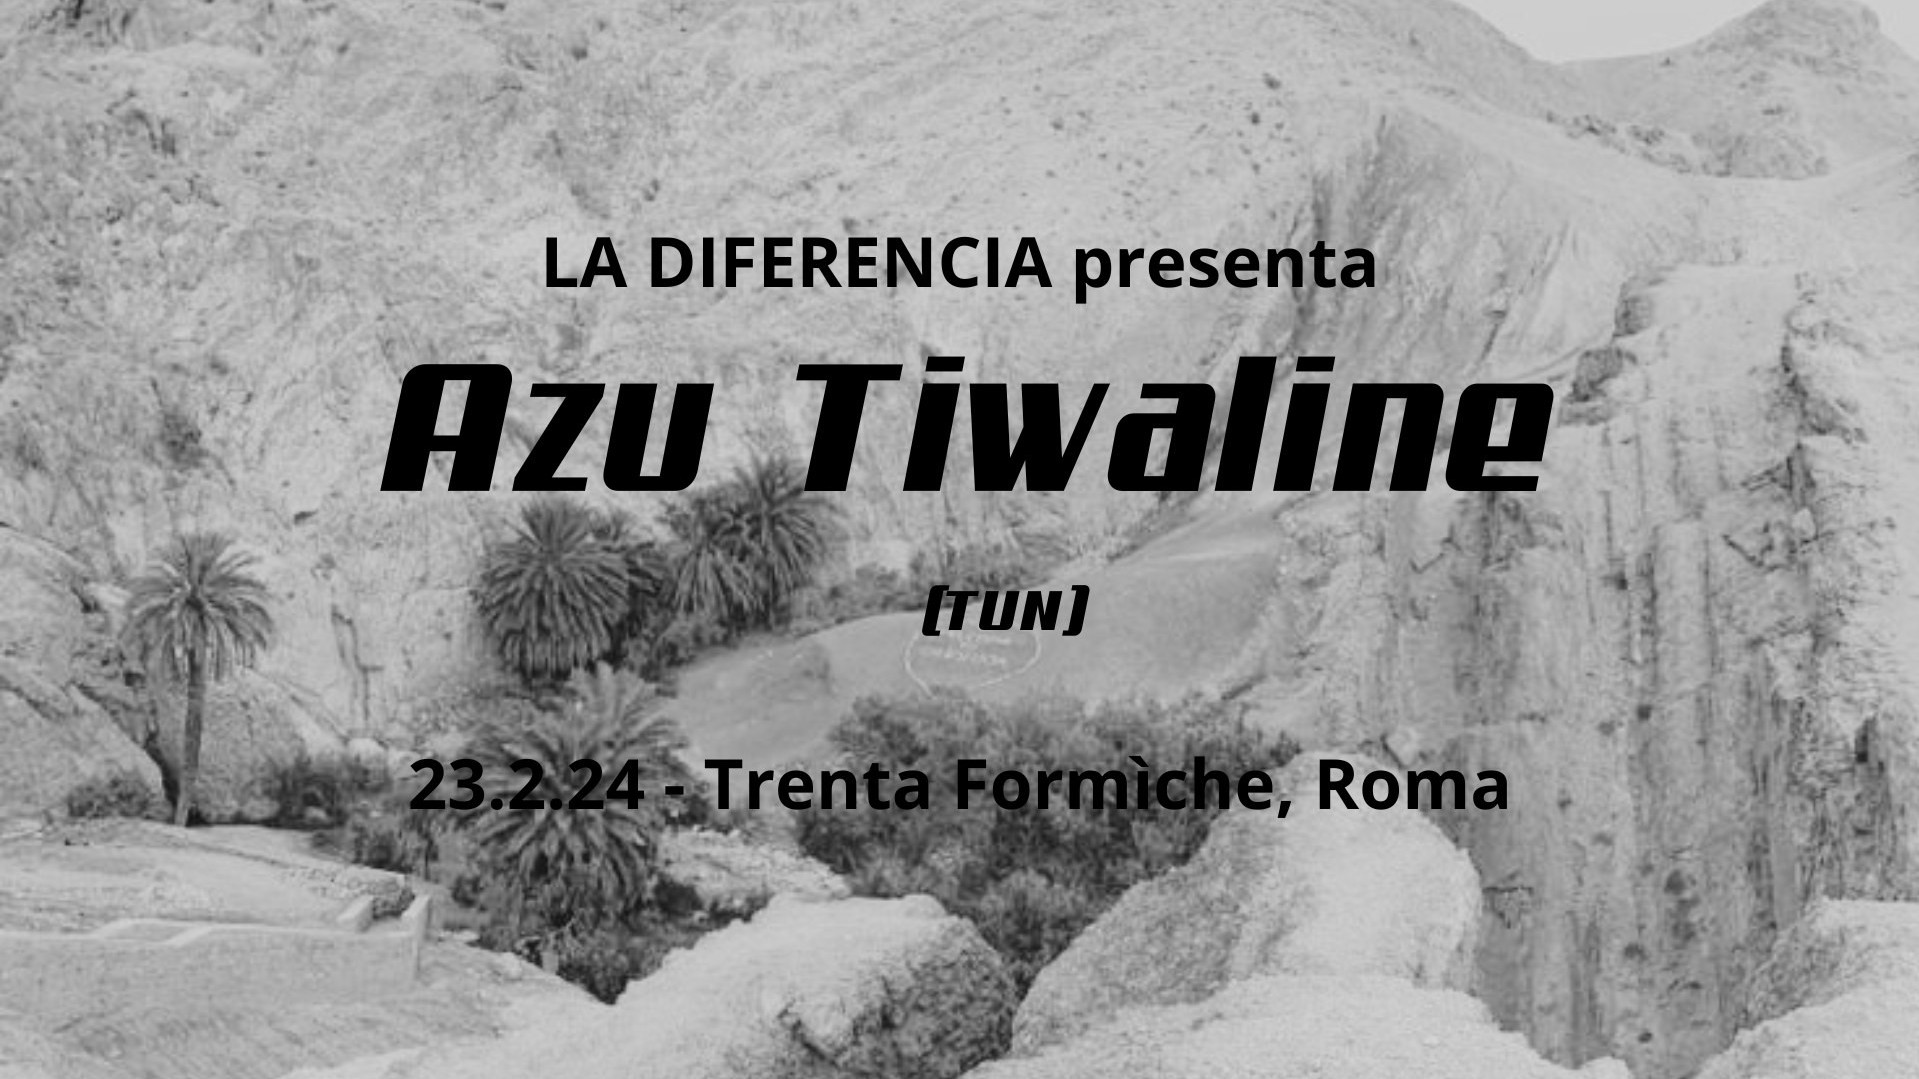 La Diferencia presenta Azu Tiwaline (Tunisia)